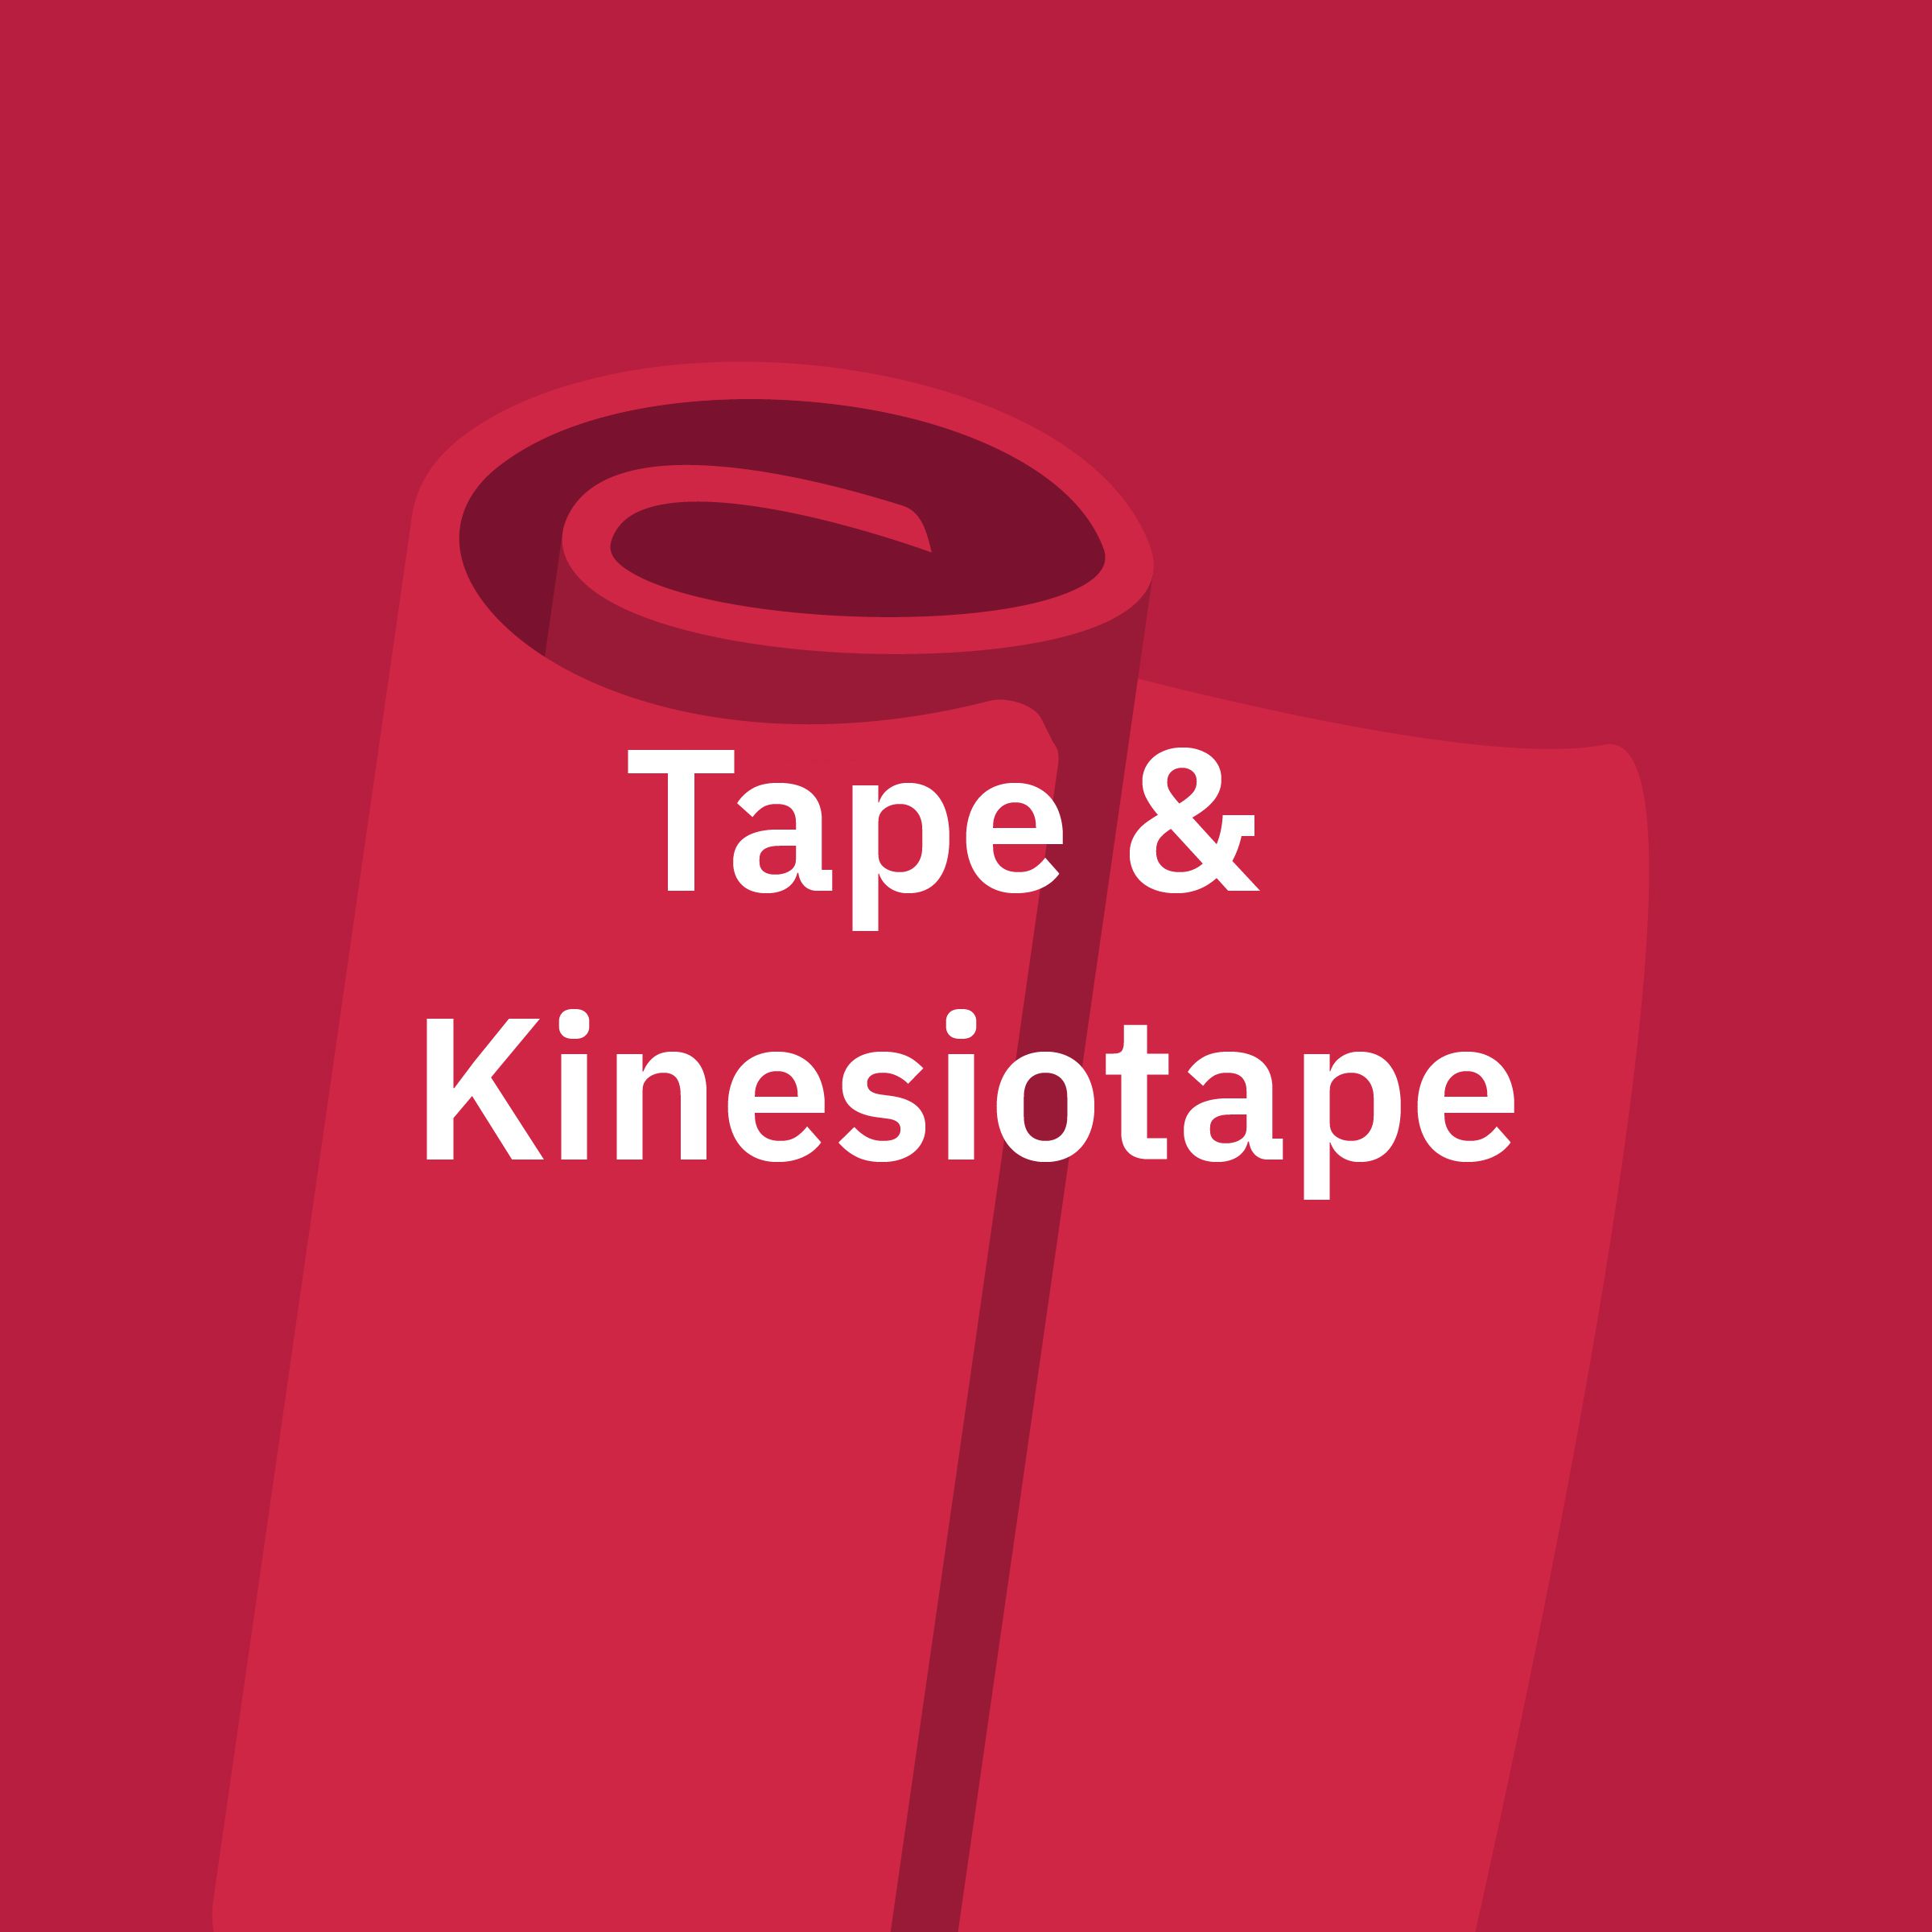 Tape & Kinesiotape